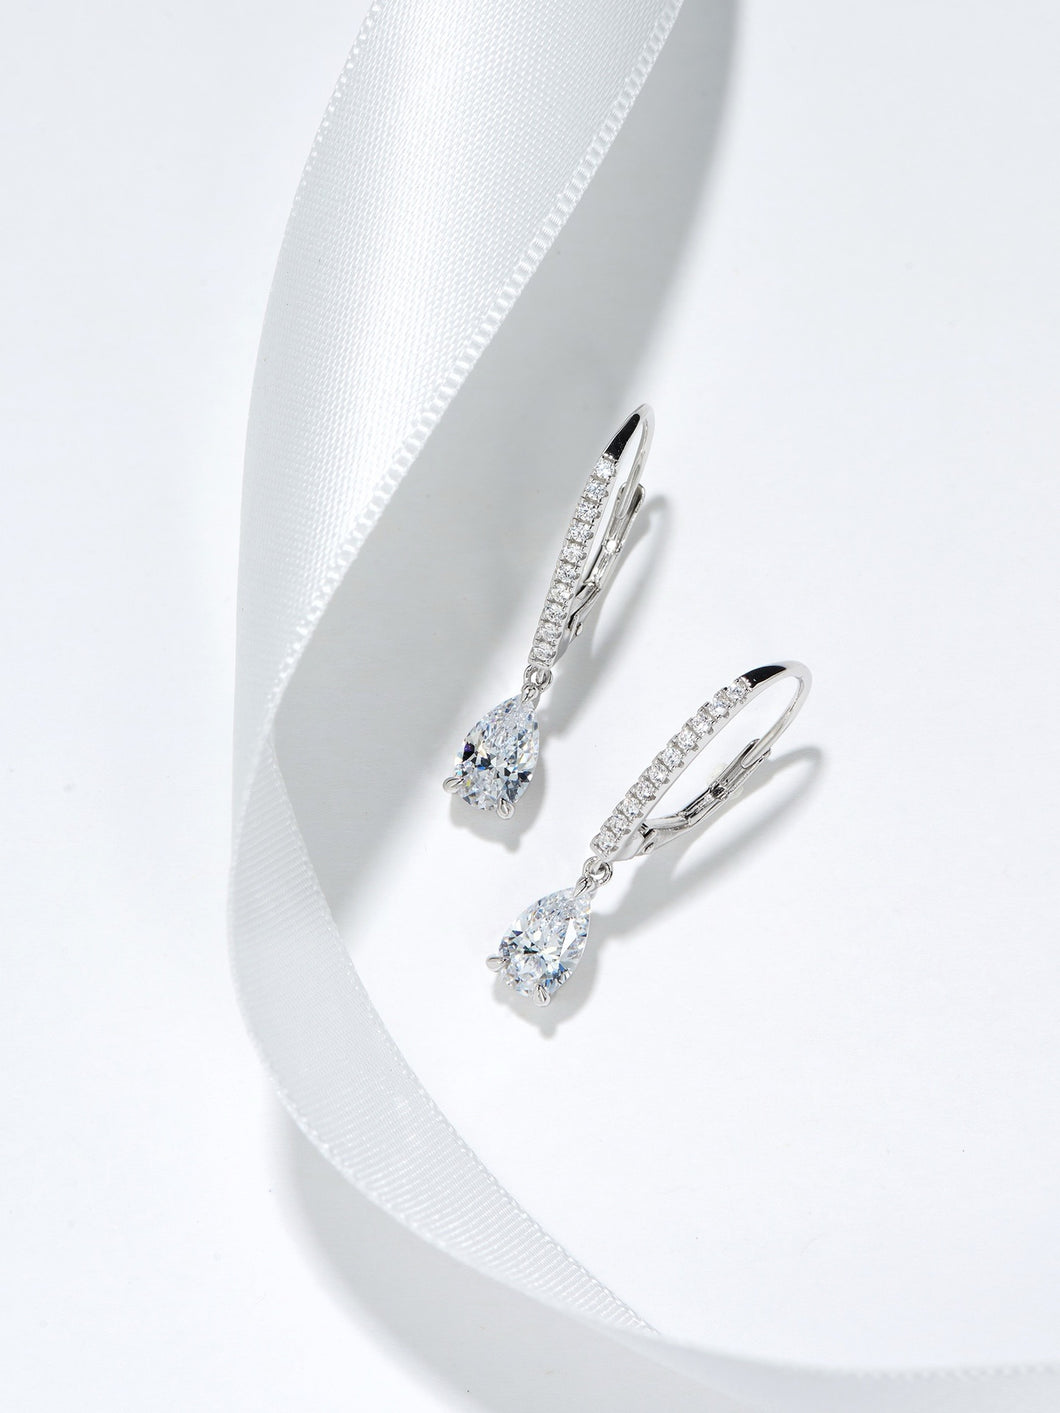 Teardrop Treasure: Pear-Cut Gemstone Drop Earrings in Gold-Plated Silver